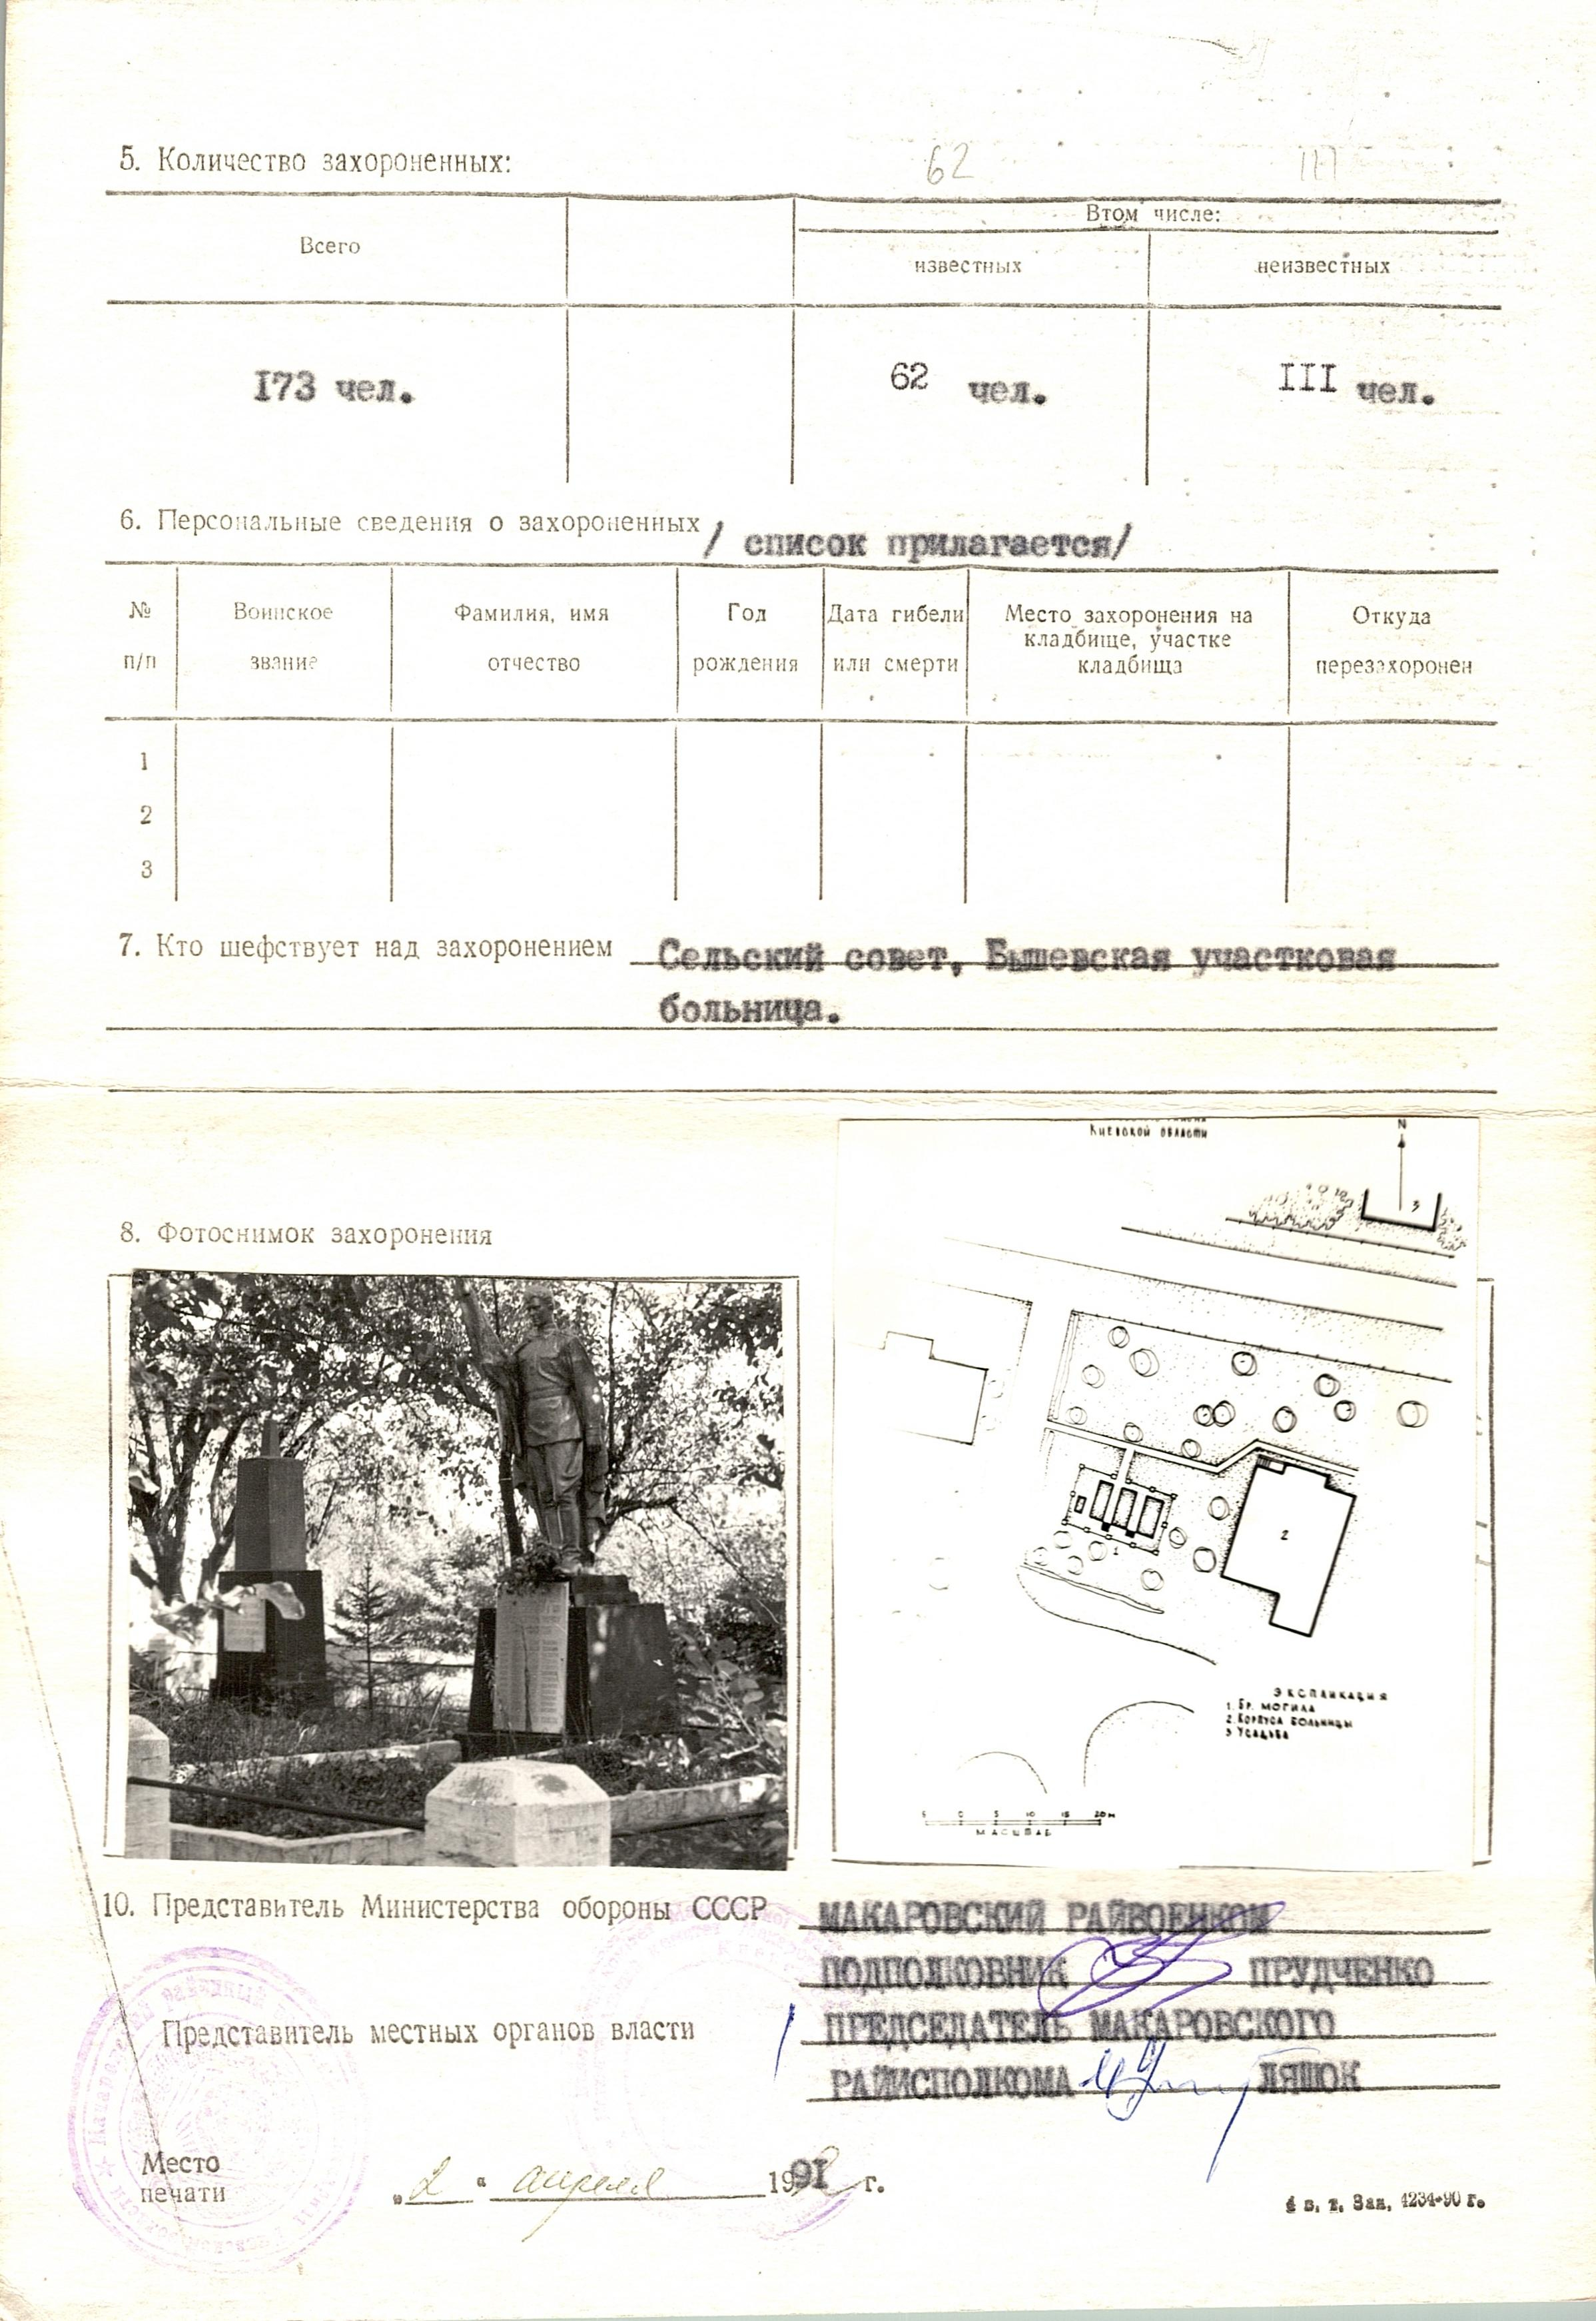 Братская могила возле ольницы в с. Бышев Макаровского района 